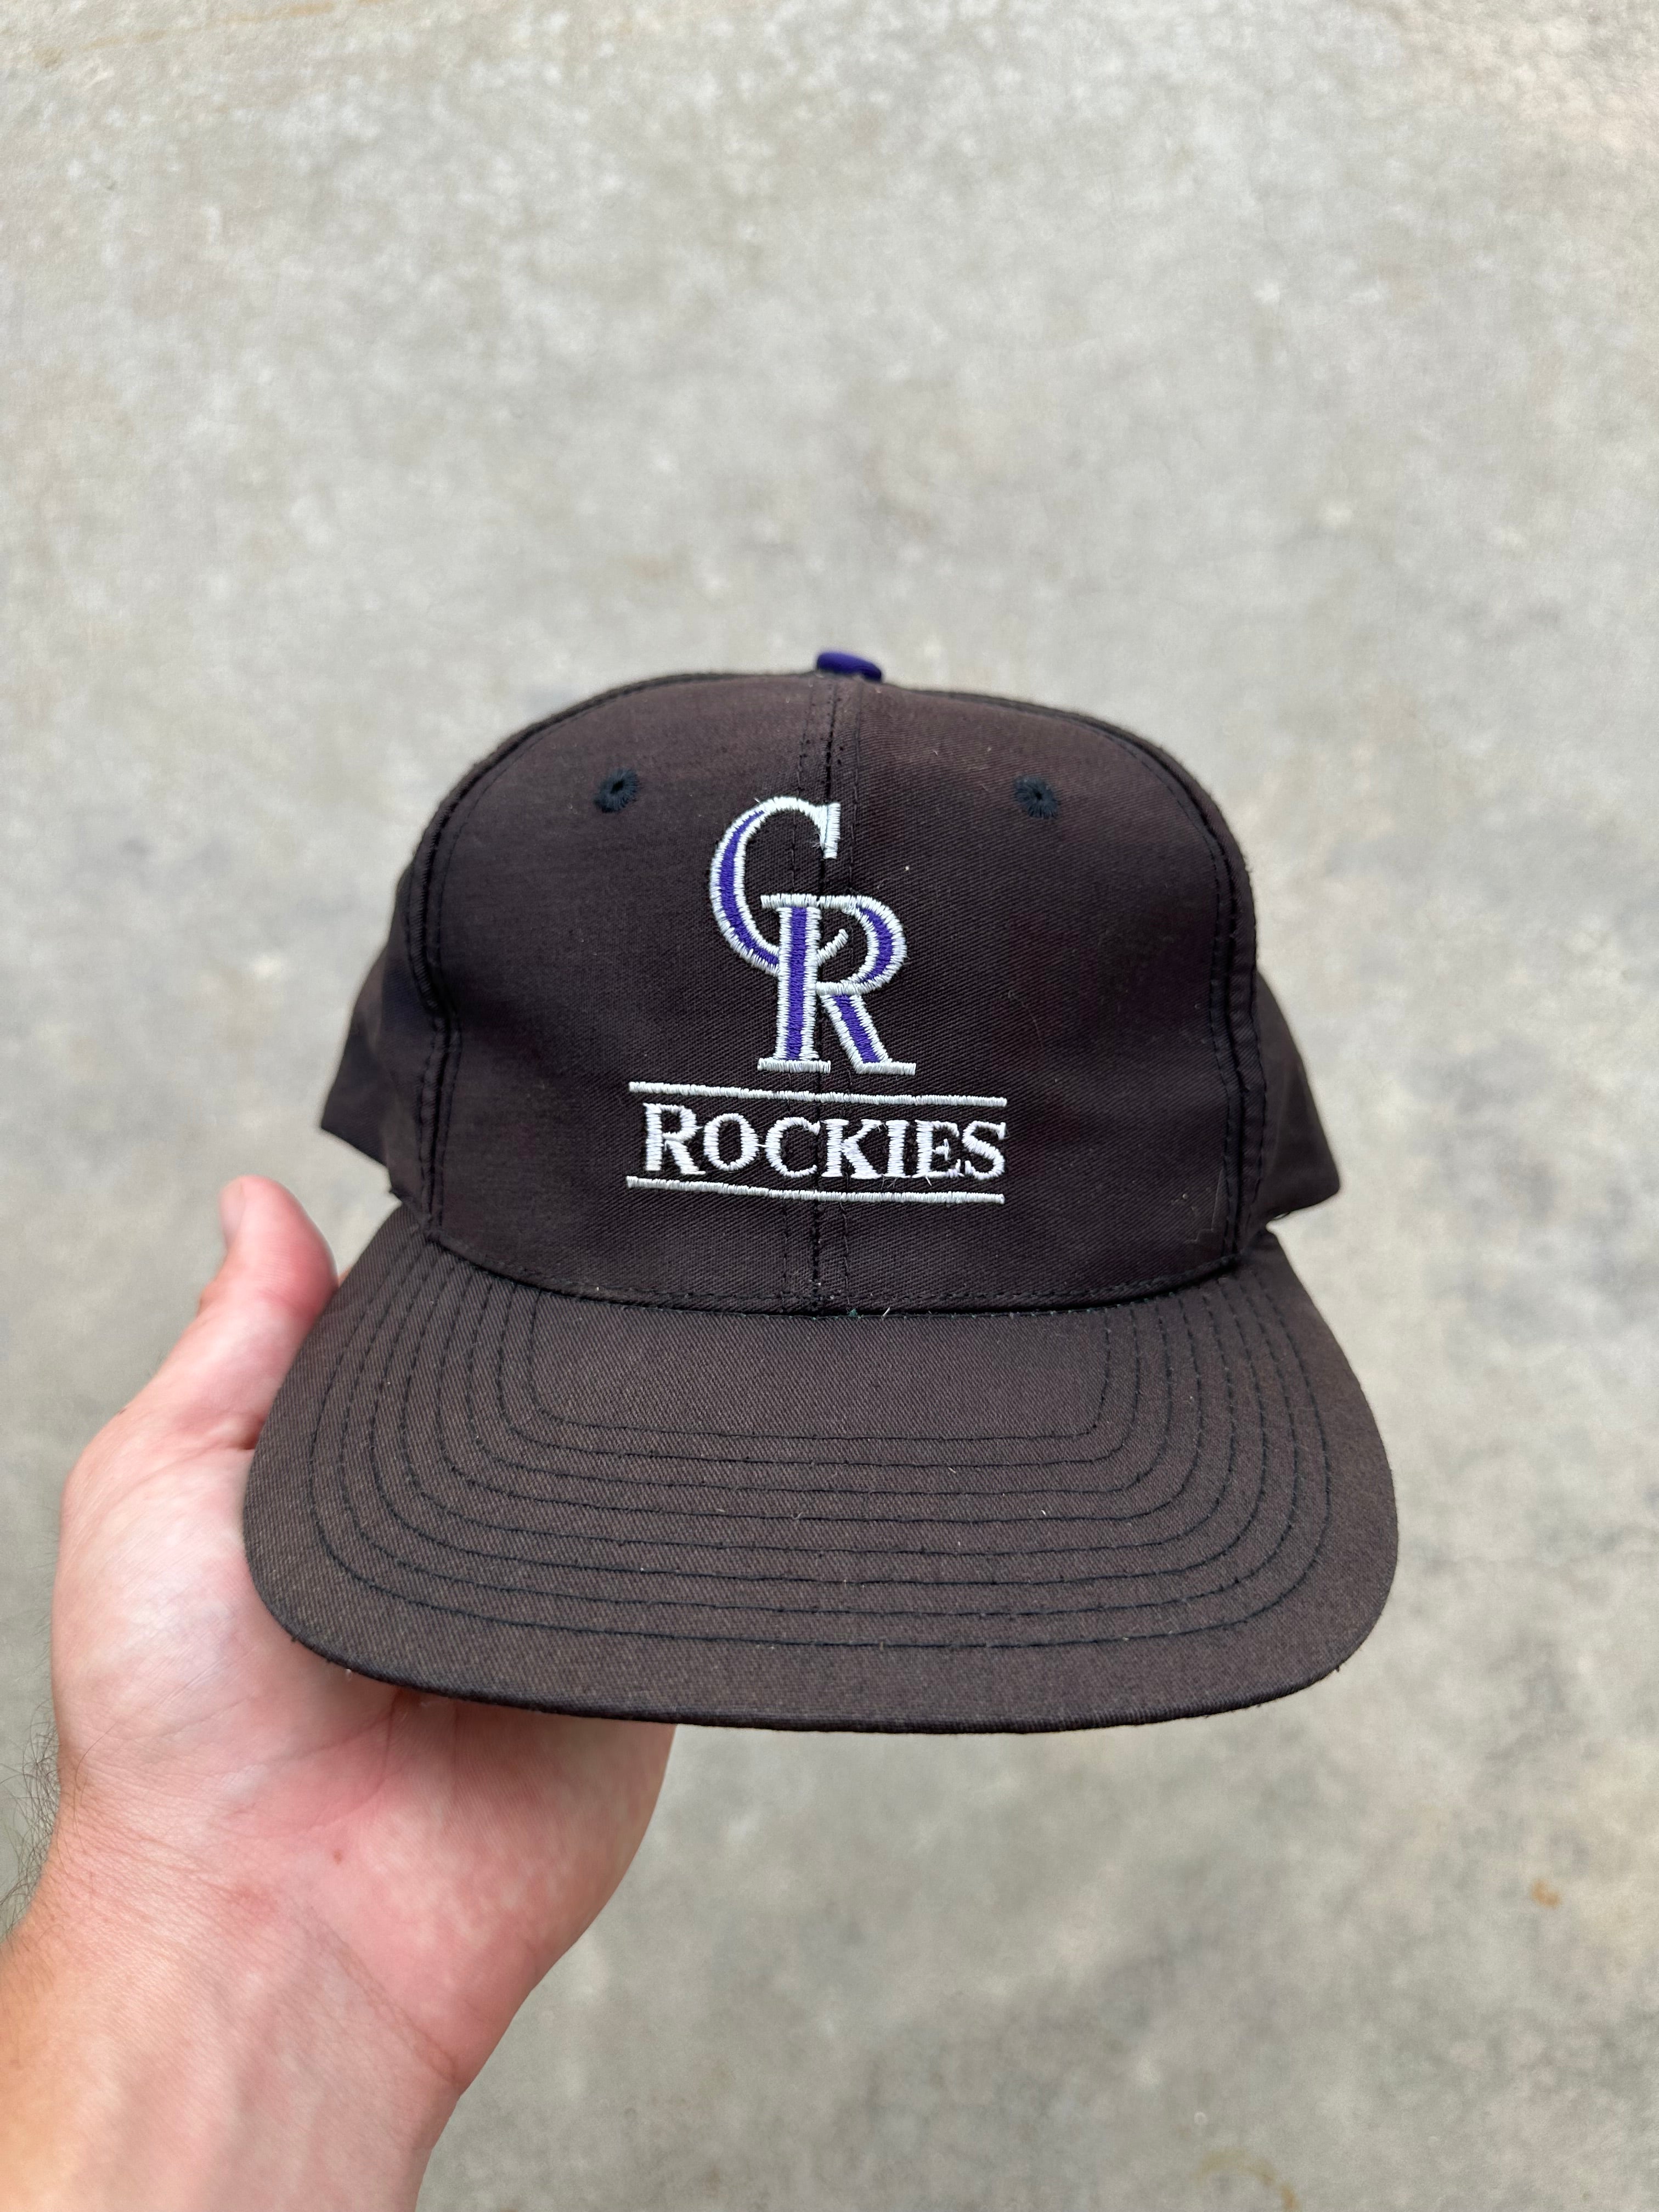 Vintage Colorado Rockies SnapBack Hat